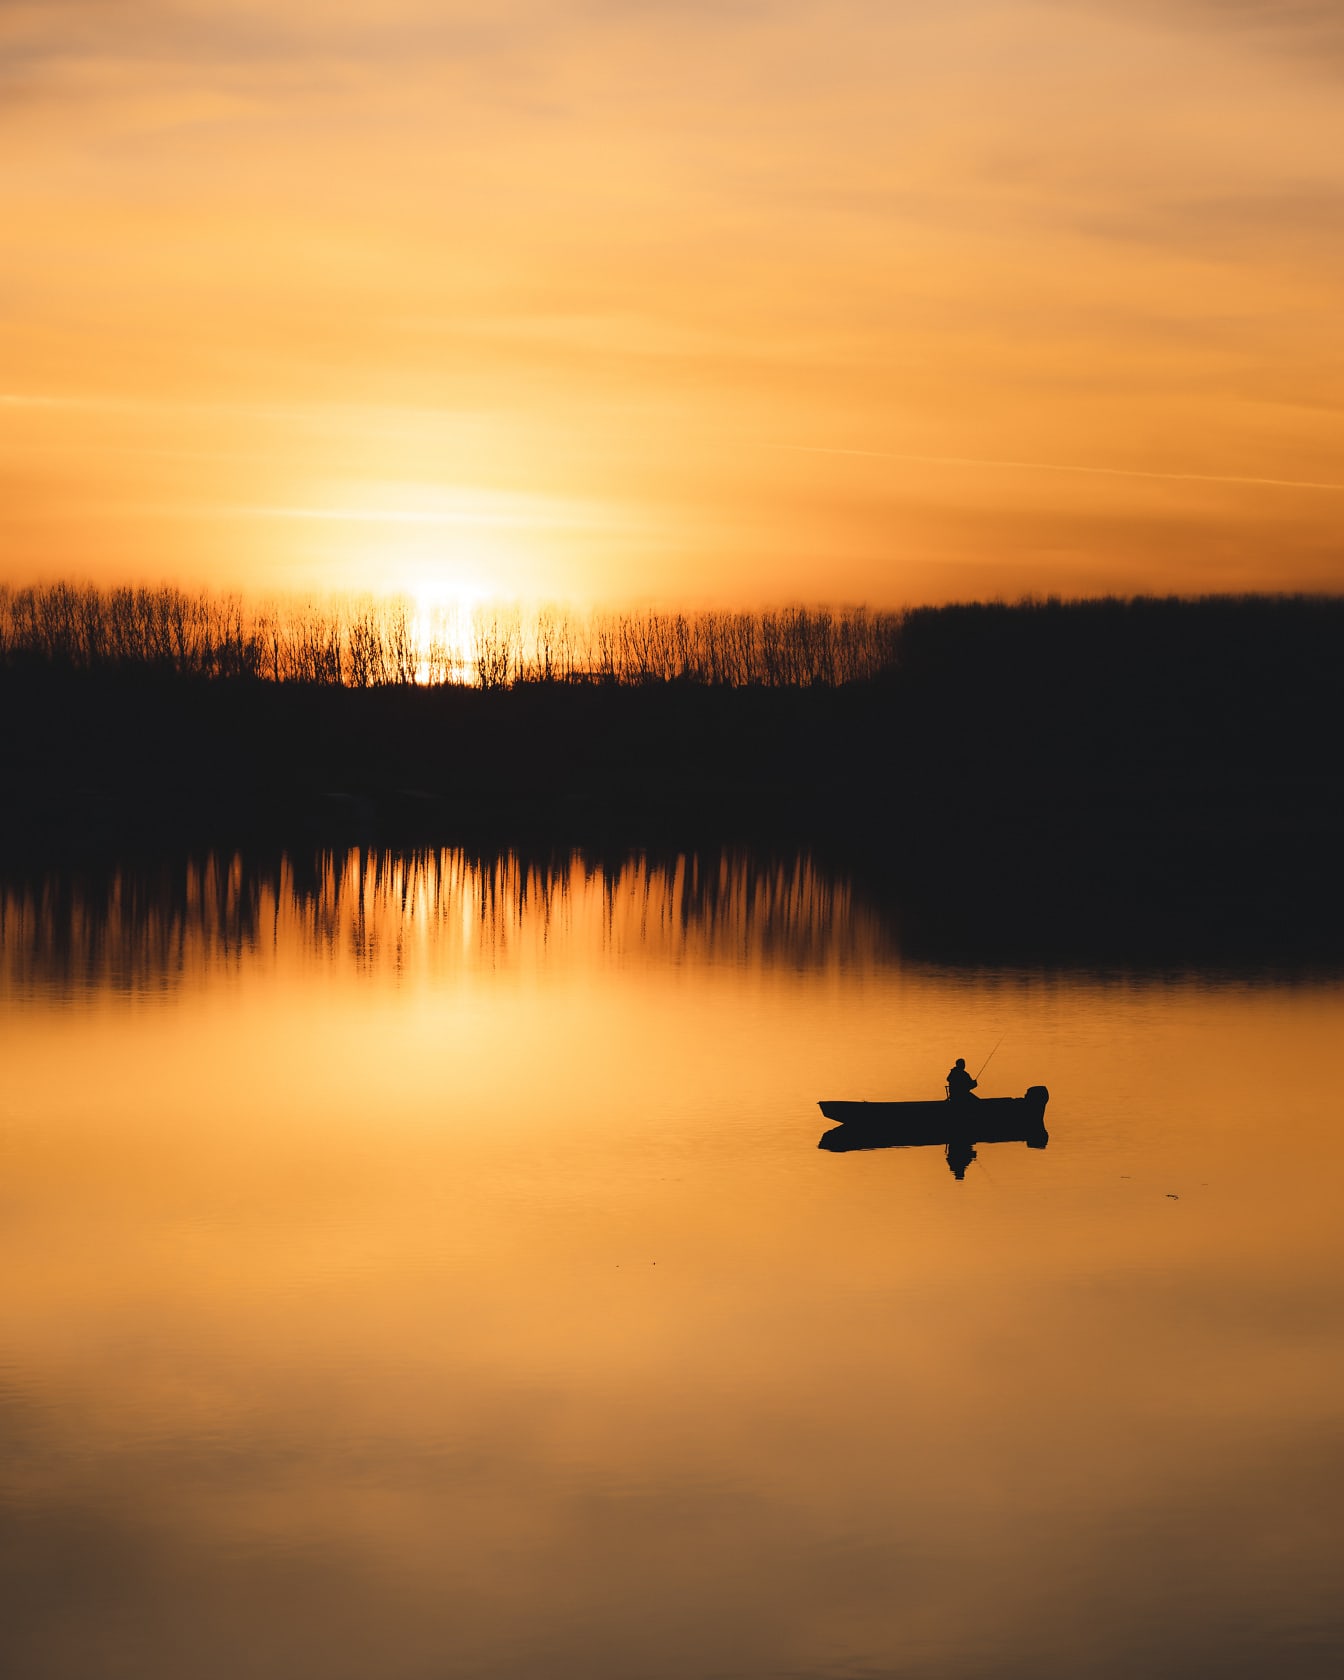 Coucher de soleil jaune orangé sur la rive avec silhouette de bateau de pêche